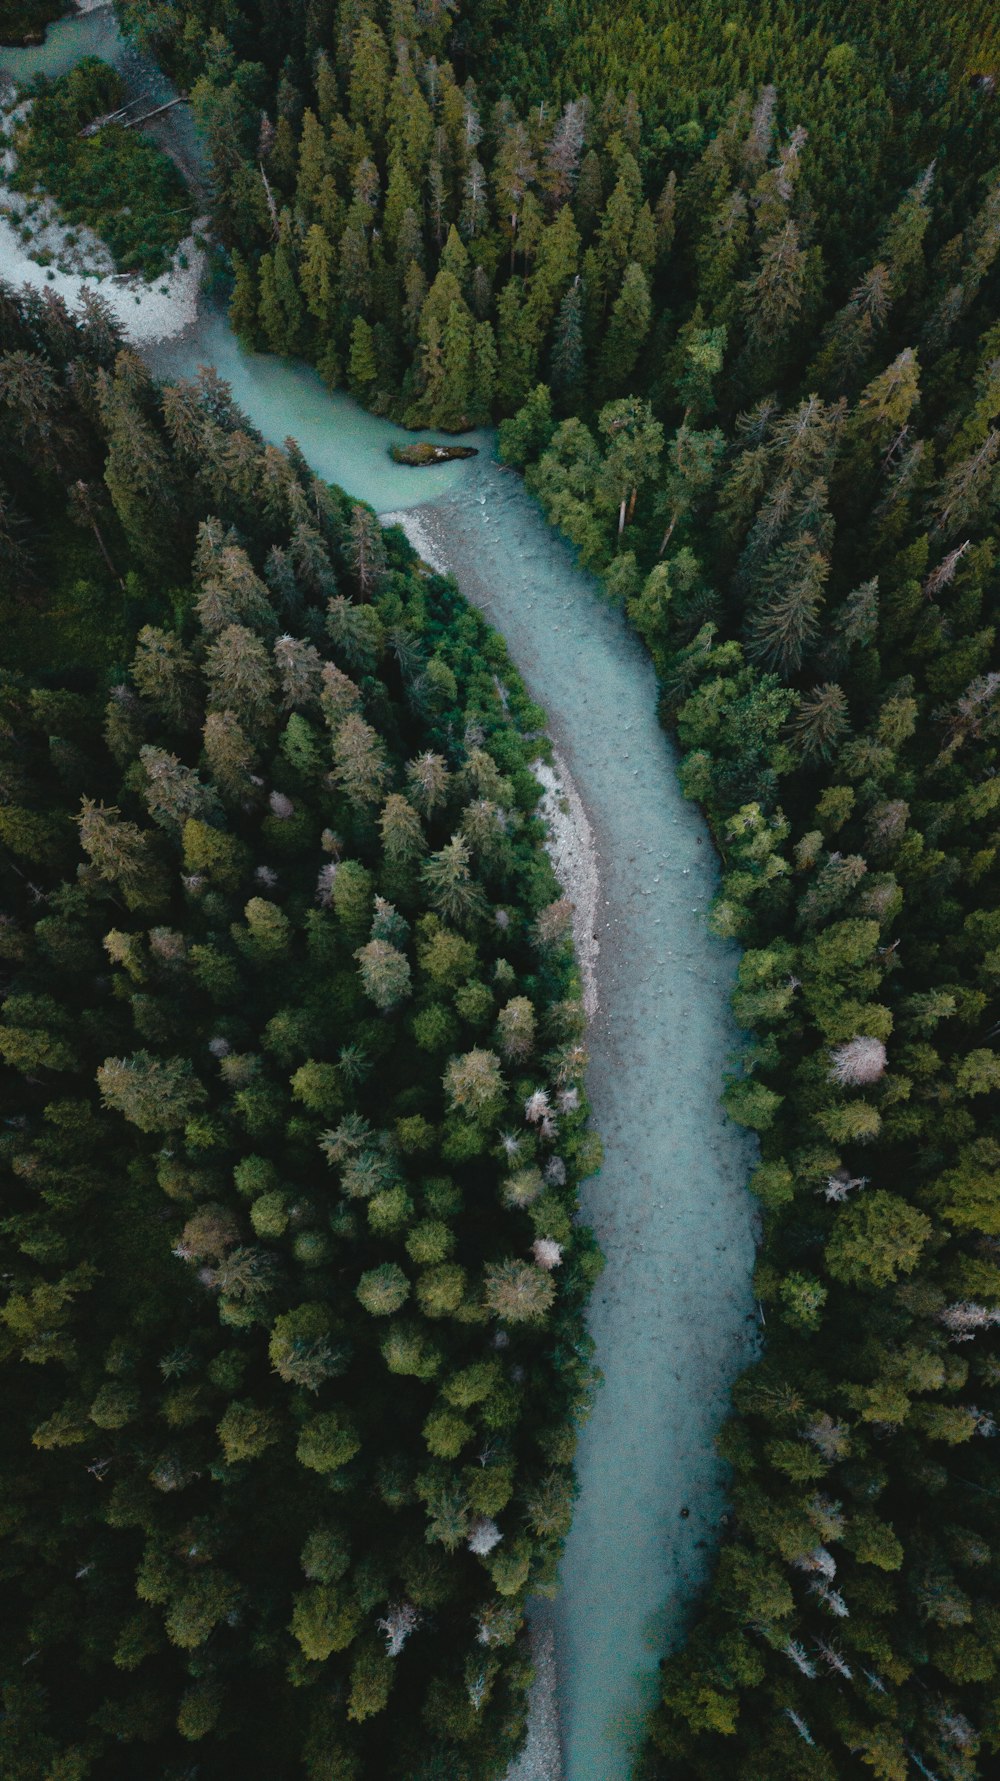 Vue aérienne de la rivière entre les arbres verts pendant la journée